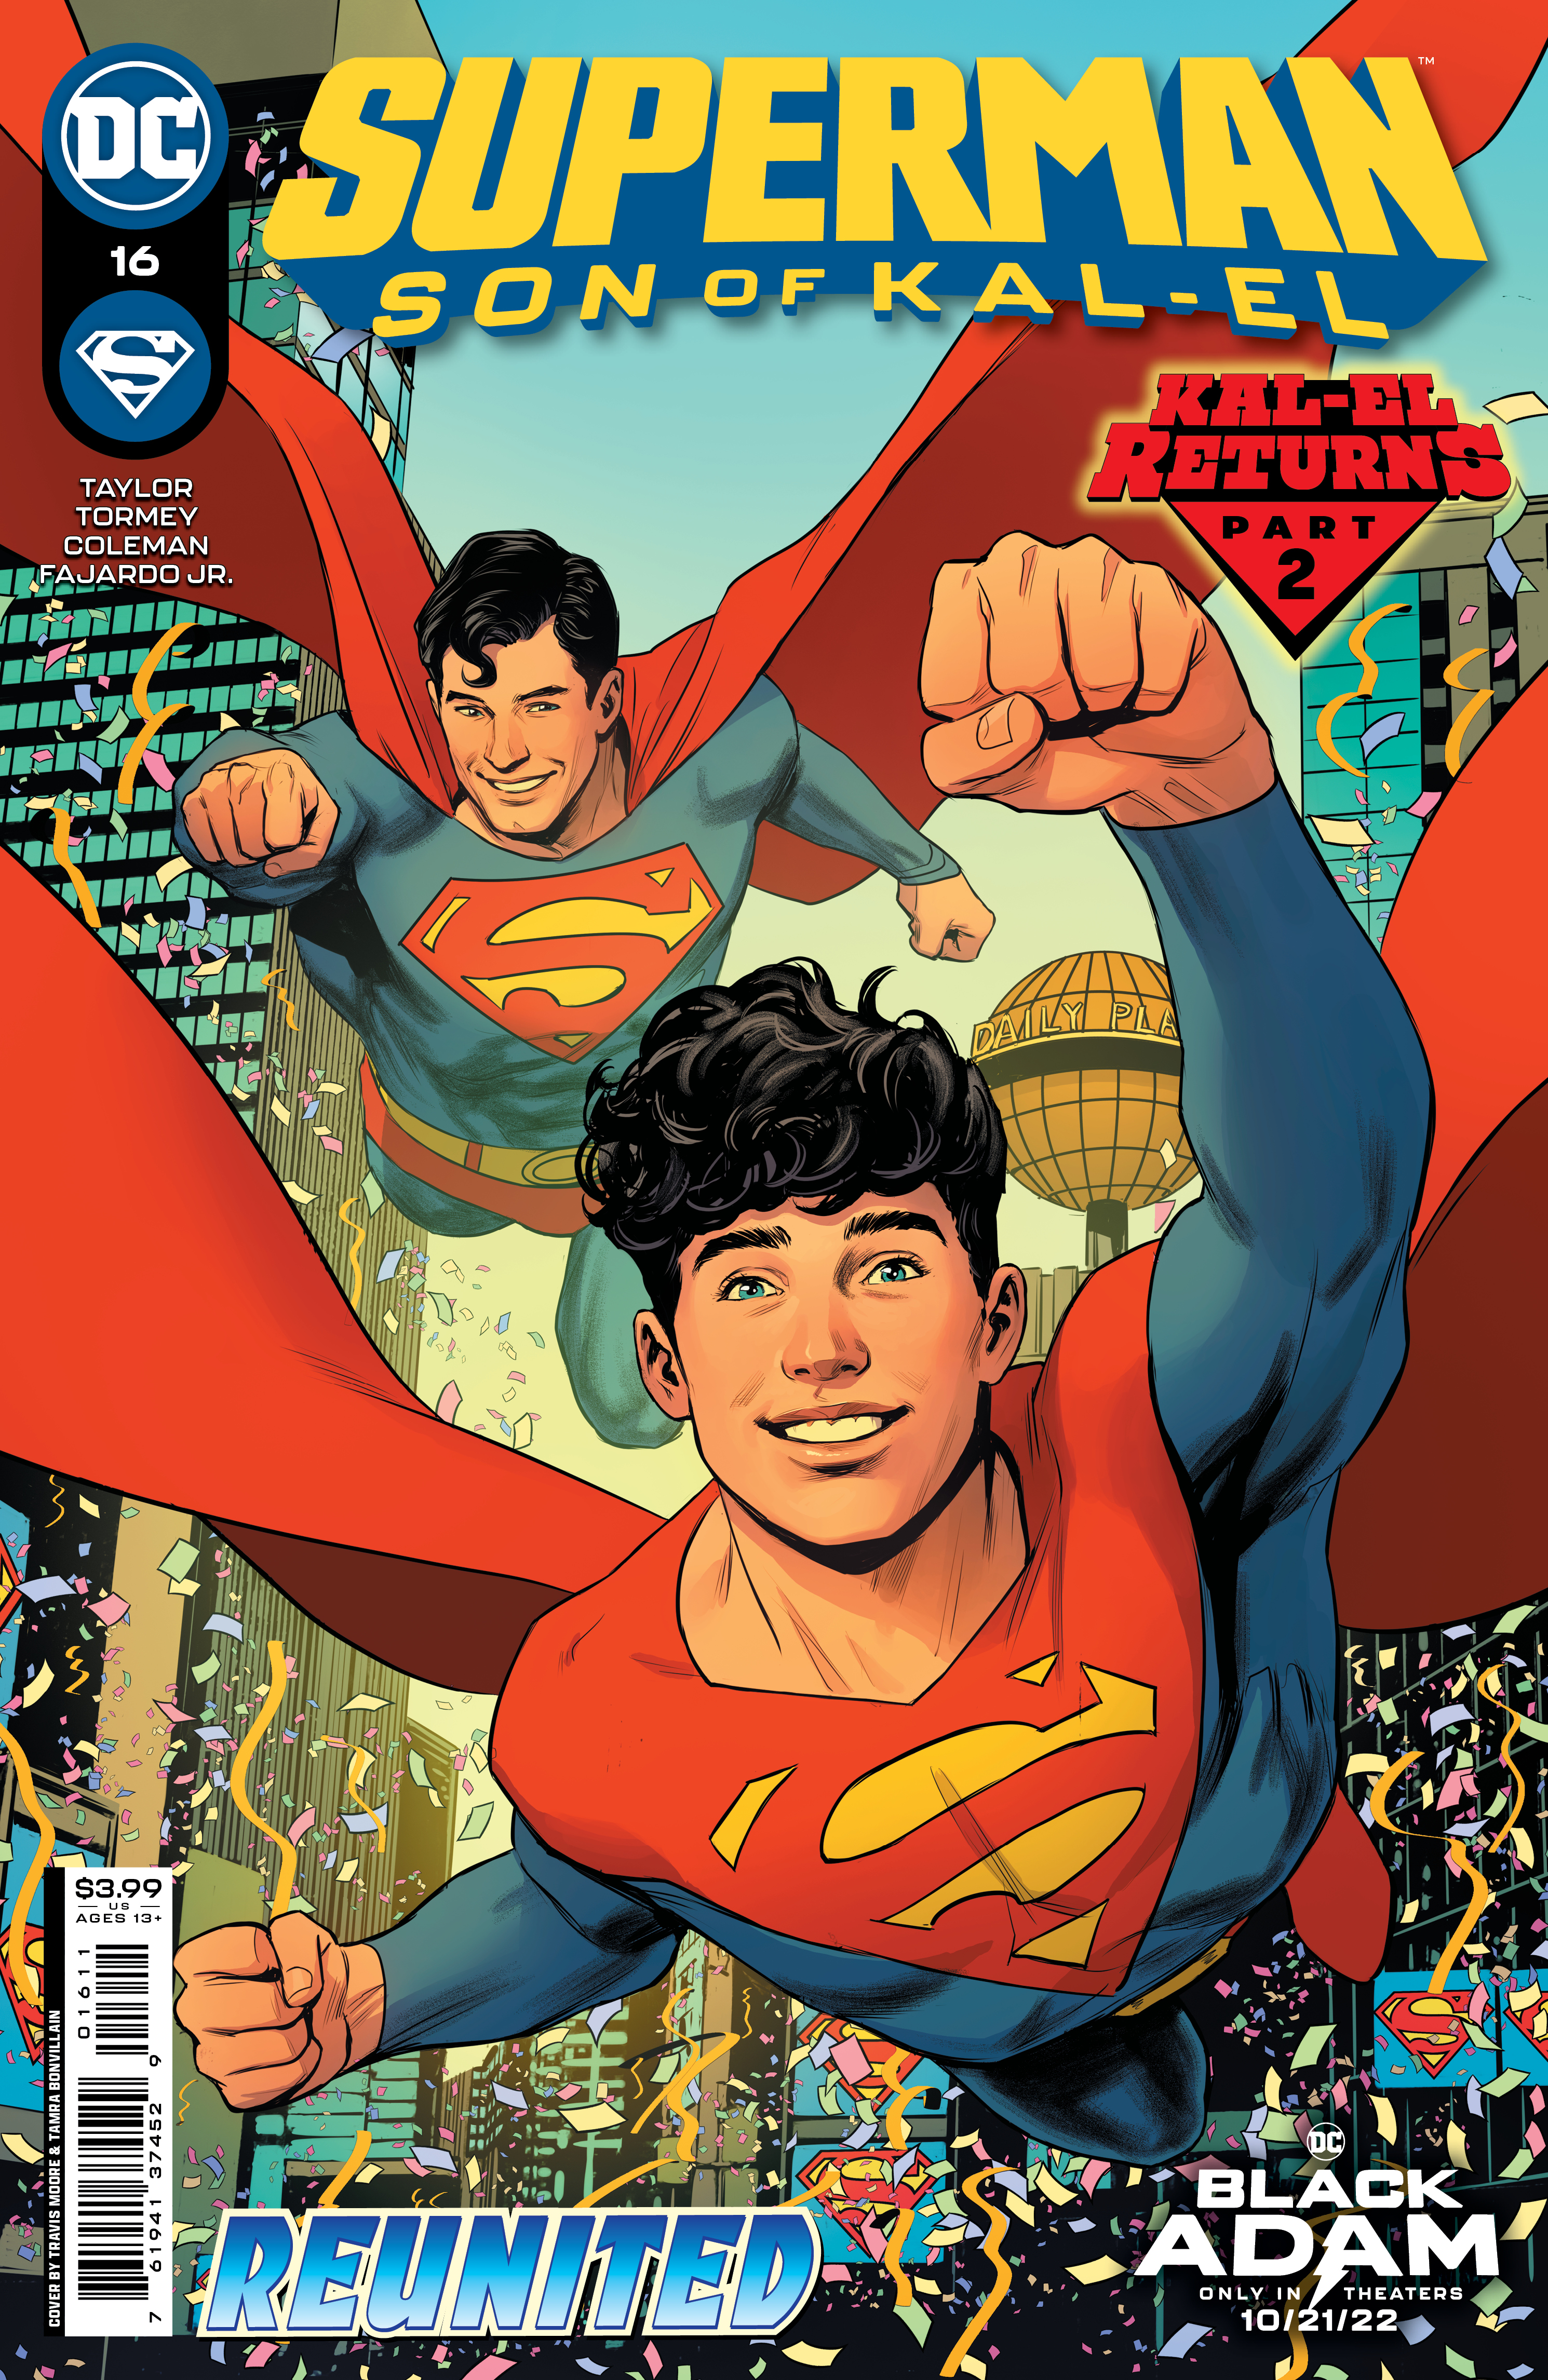 Superman Son of Kal-El #16 Cover A Travis Moore (Kal-El Returns)